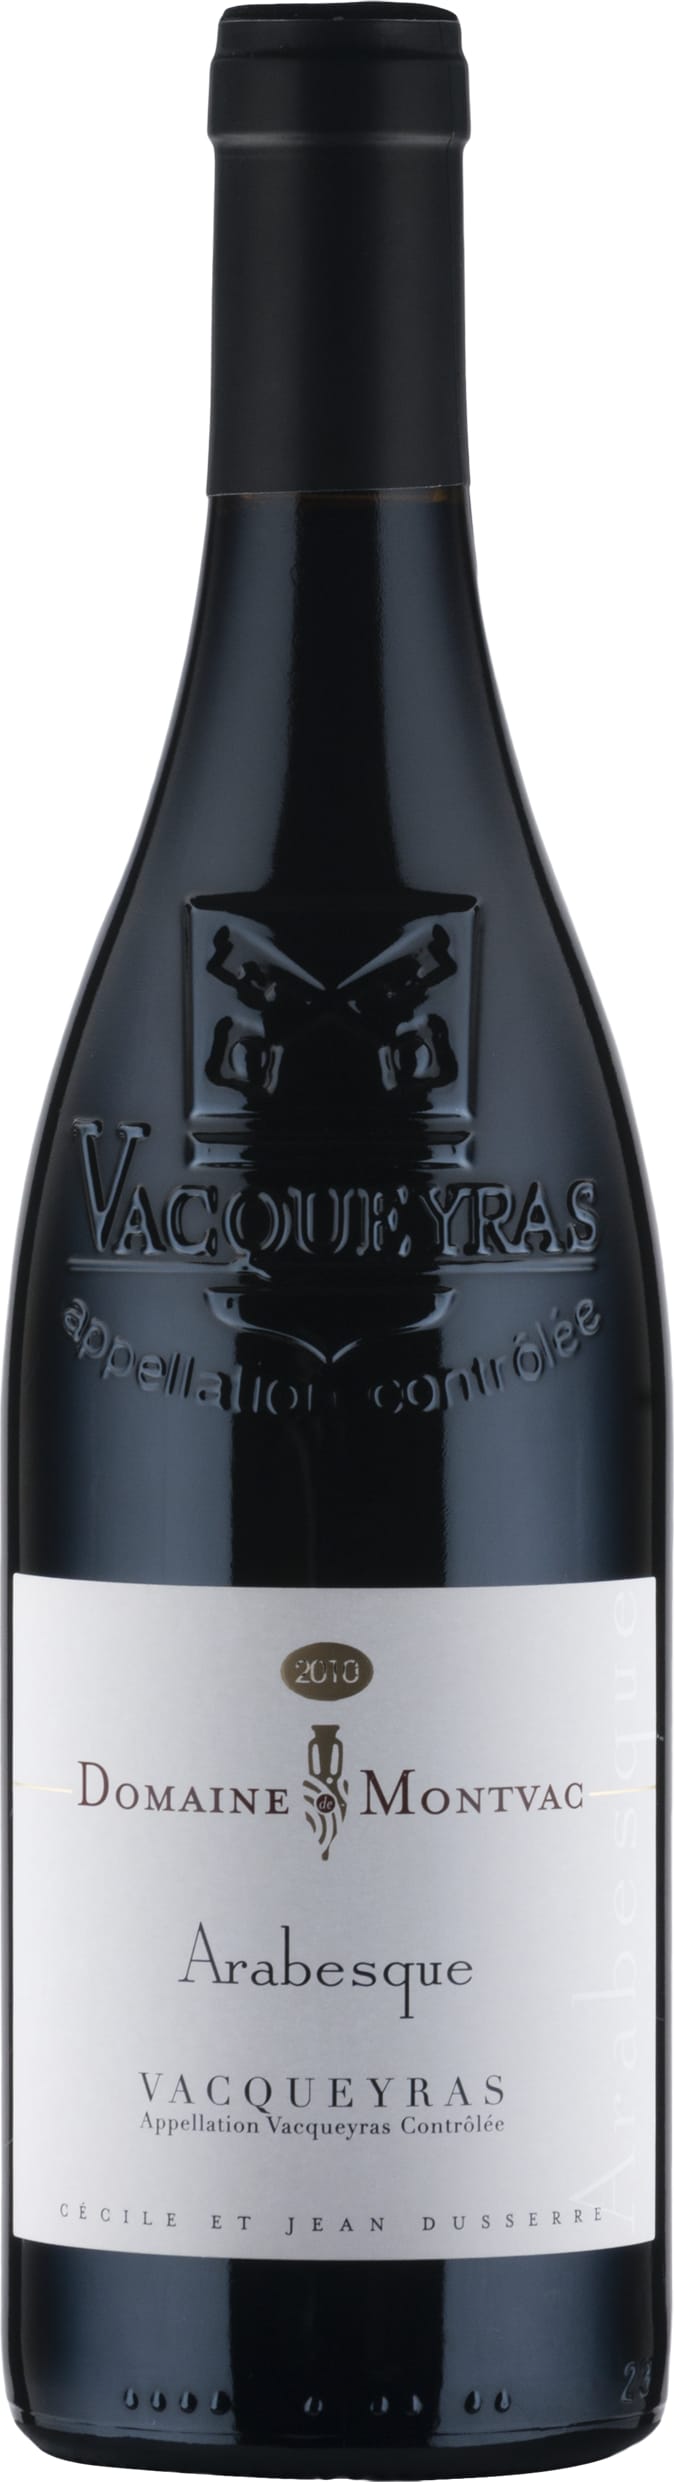 Domaine de Montvac Vacqueyras 'Arabesque' 2021 75cl - Buy Domaine de Montvac Wines from GREAT WINES DIRECT wine shop